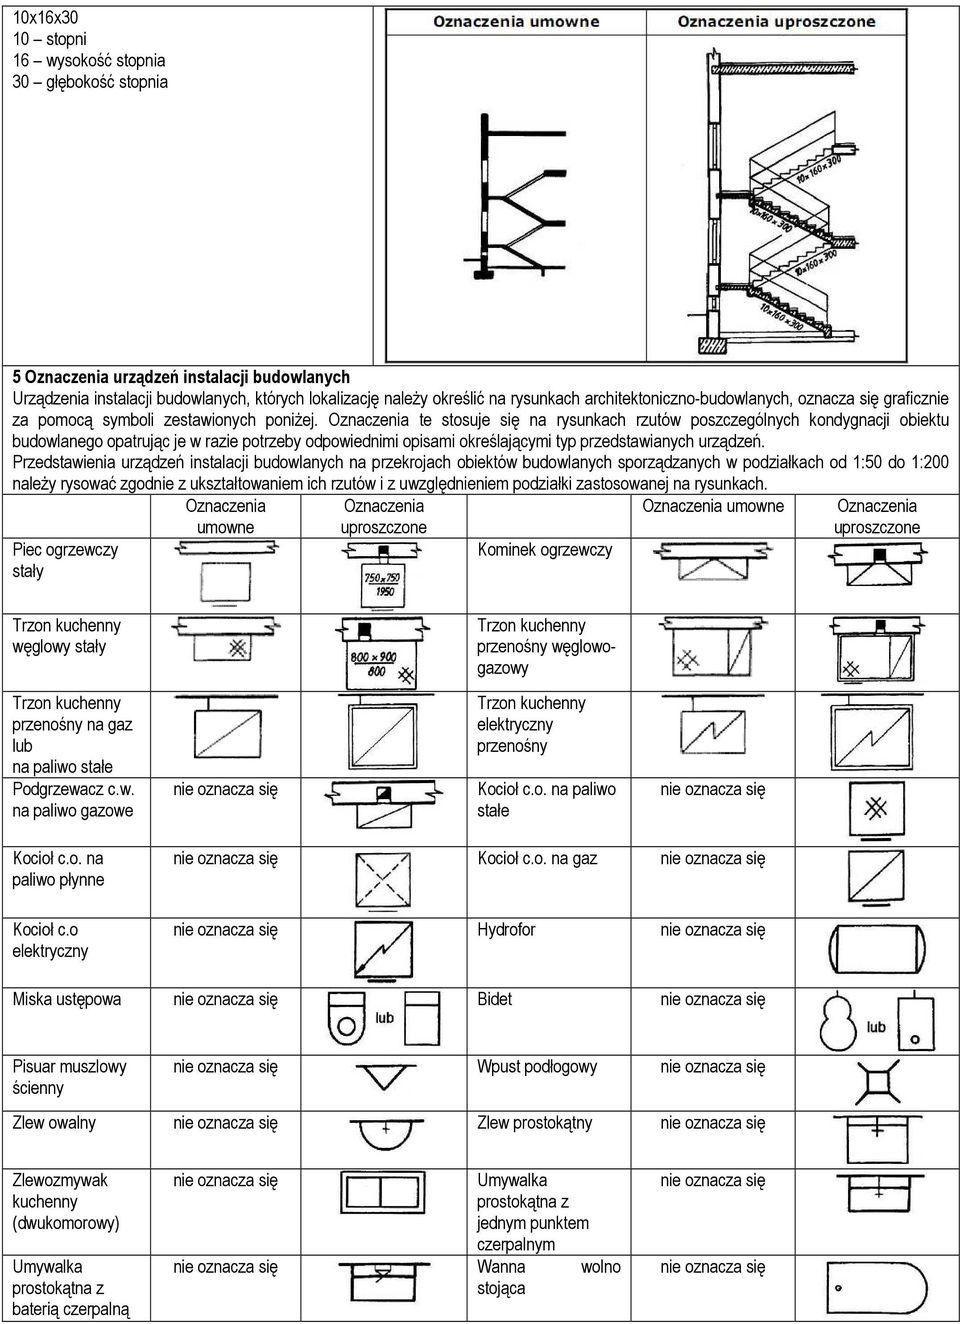 Oznaczenia te stosuje się na rysunkach rzutów poszczególnych kondygnacji obiektu budowlanego opatrując je w razie potrzeby odpowiednimi opisami określającymi typ przedstawianych urządzeń.